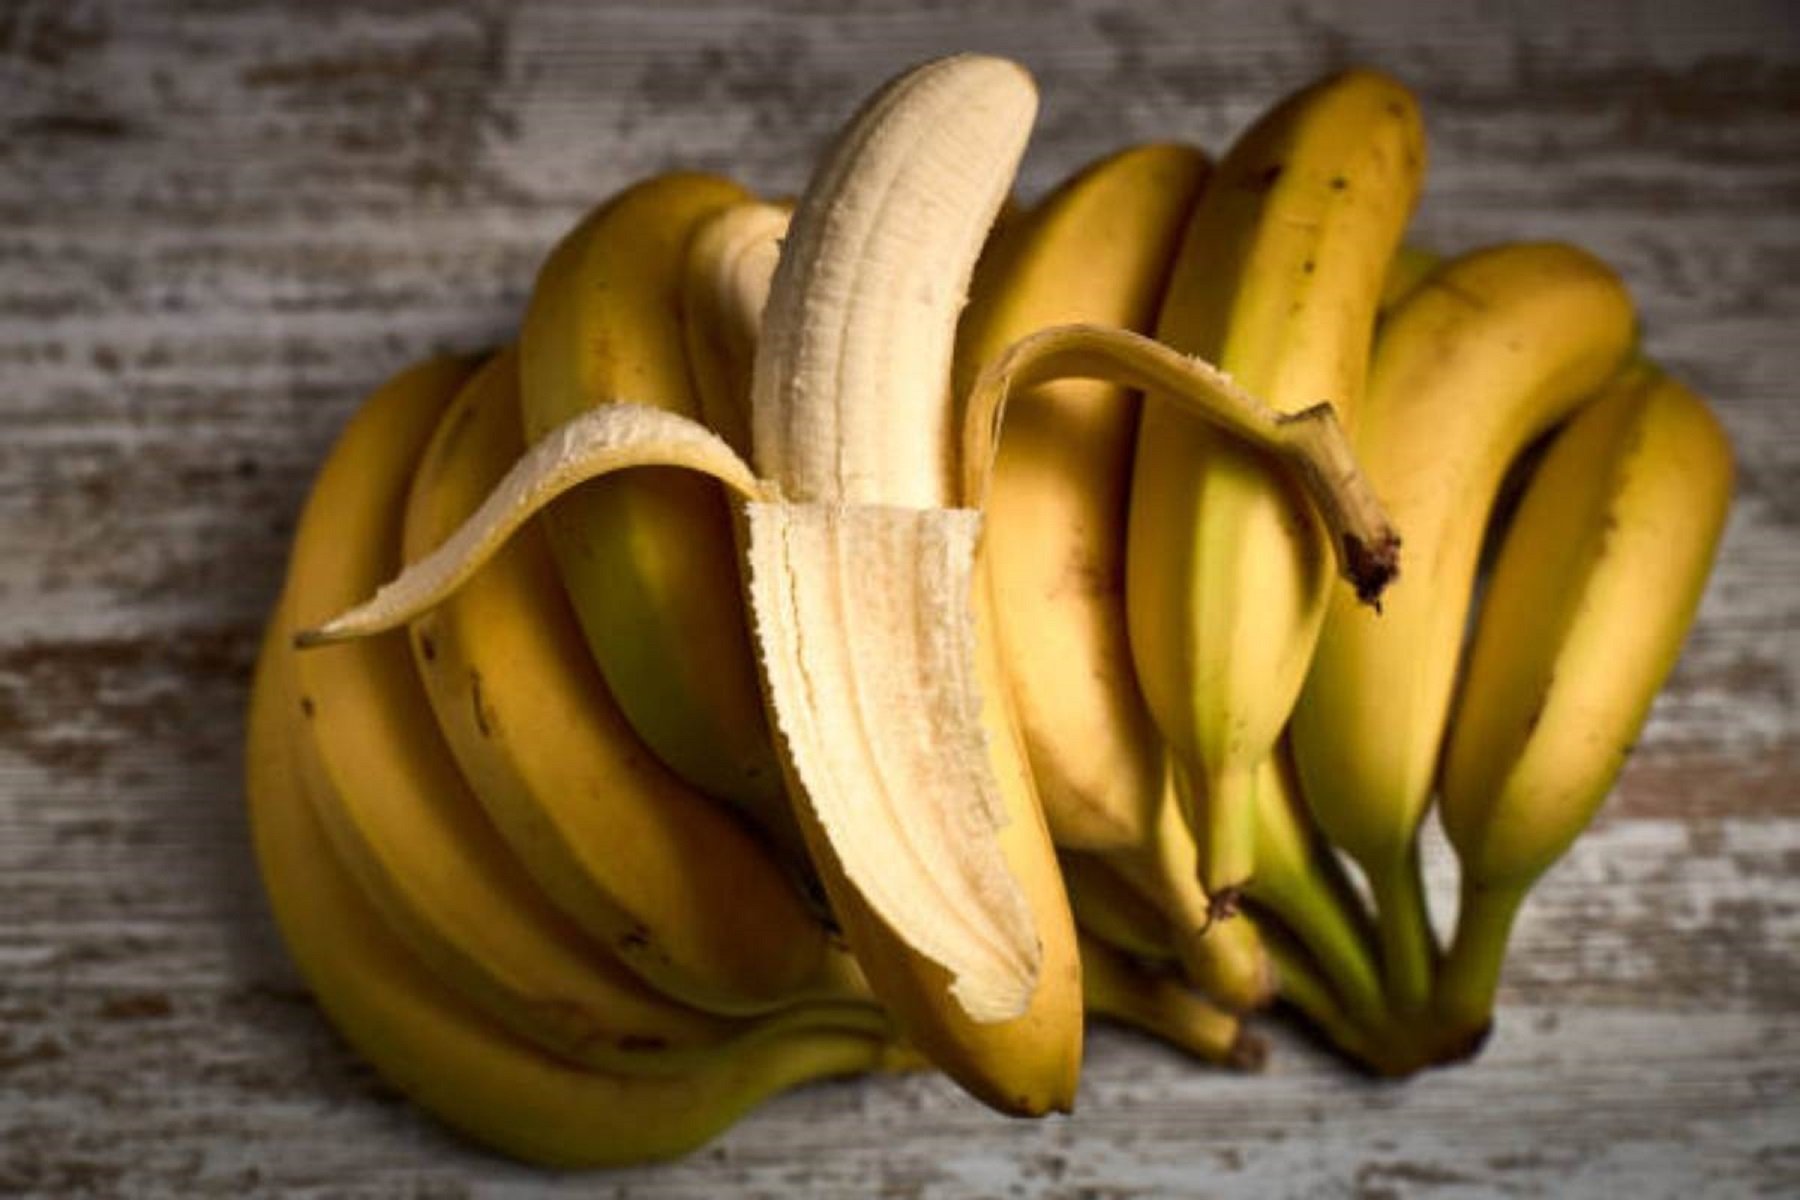 En què es diferencien un plàtan i una banana?